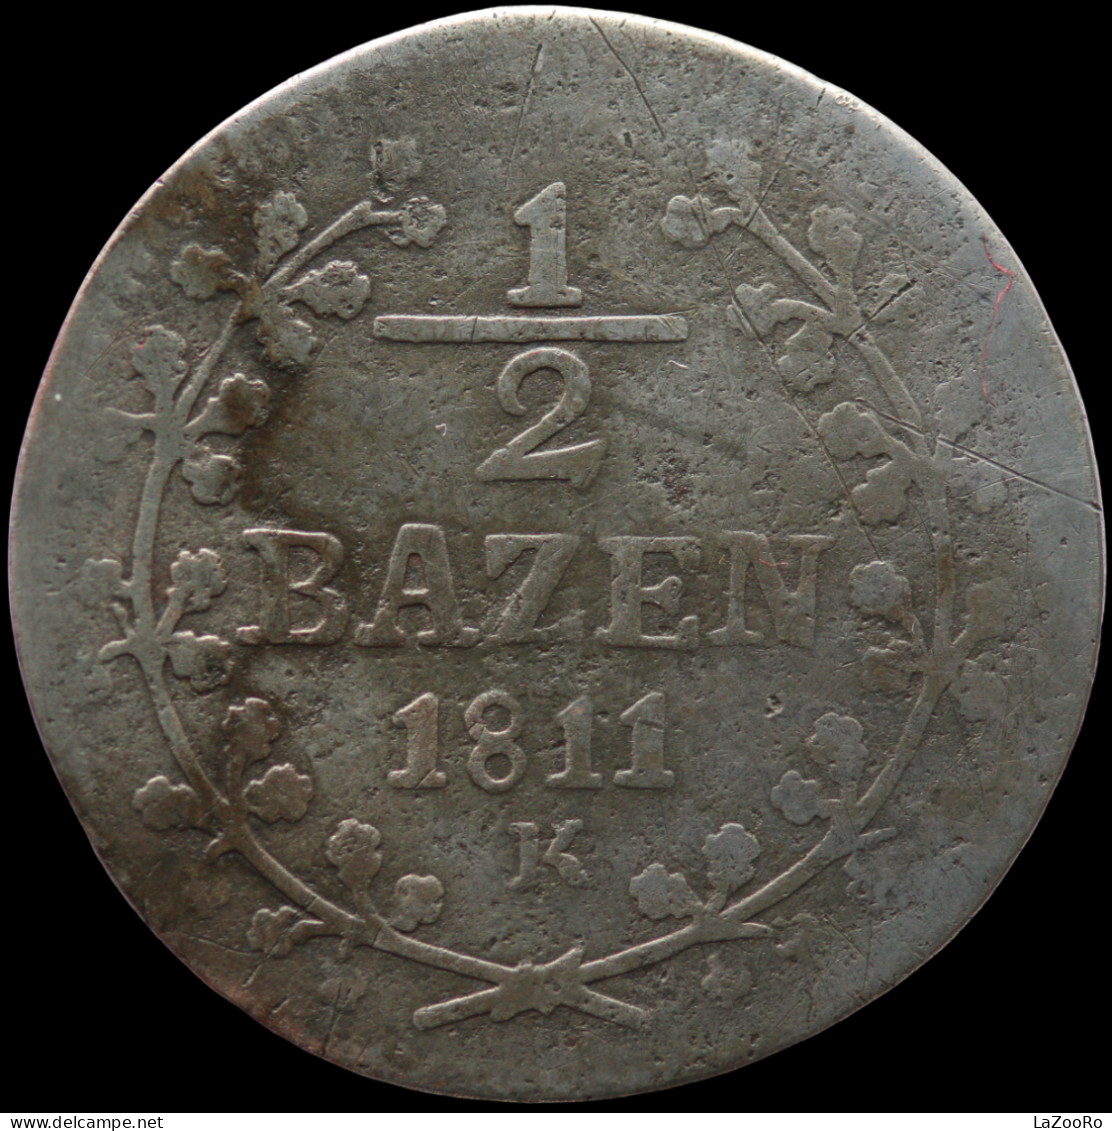 LaZooRo: Switzerland SAINT GALL 1/2 Batzen 1811 K VF - Silver - Cantonal Coins